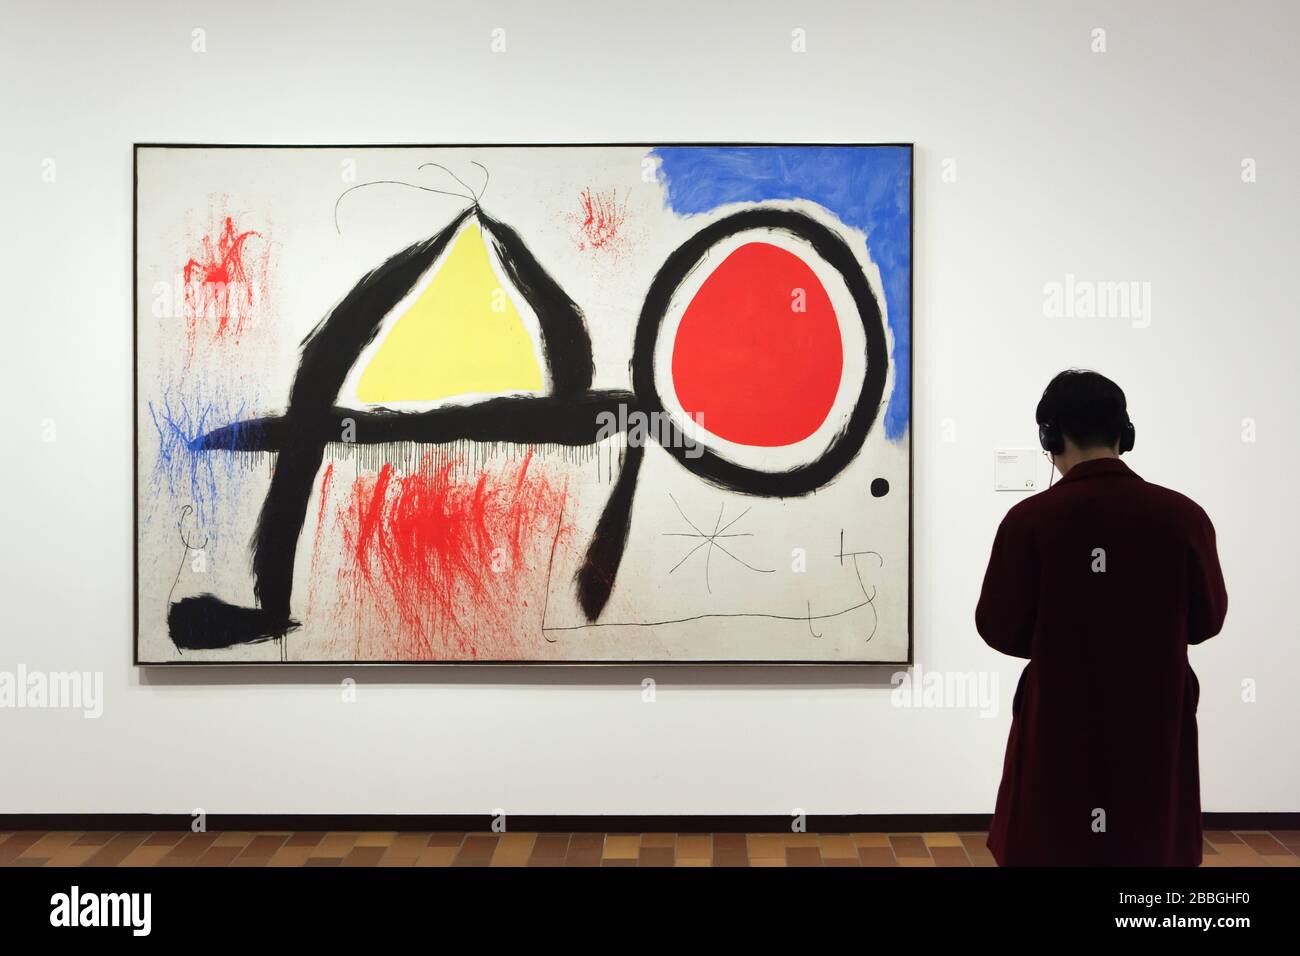 Visiteur devant la peinture du peintre moderniste espagnol Joan Miró intitulée "Figure devant le soleil" (1968) exposé dans la Fundació Joan Miró (Fondation Joan Miró) à Barcelone, Catalogne, Espagne. Banque D'Images